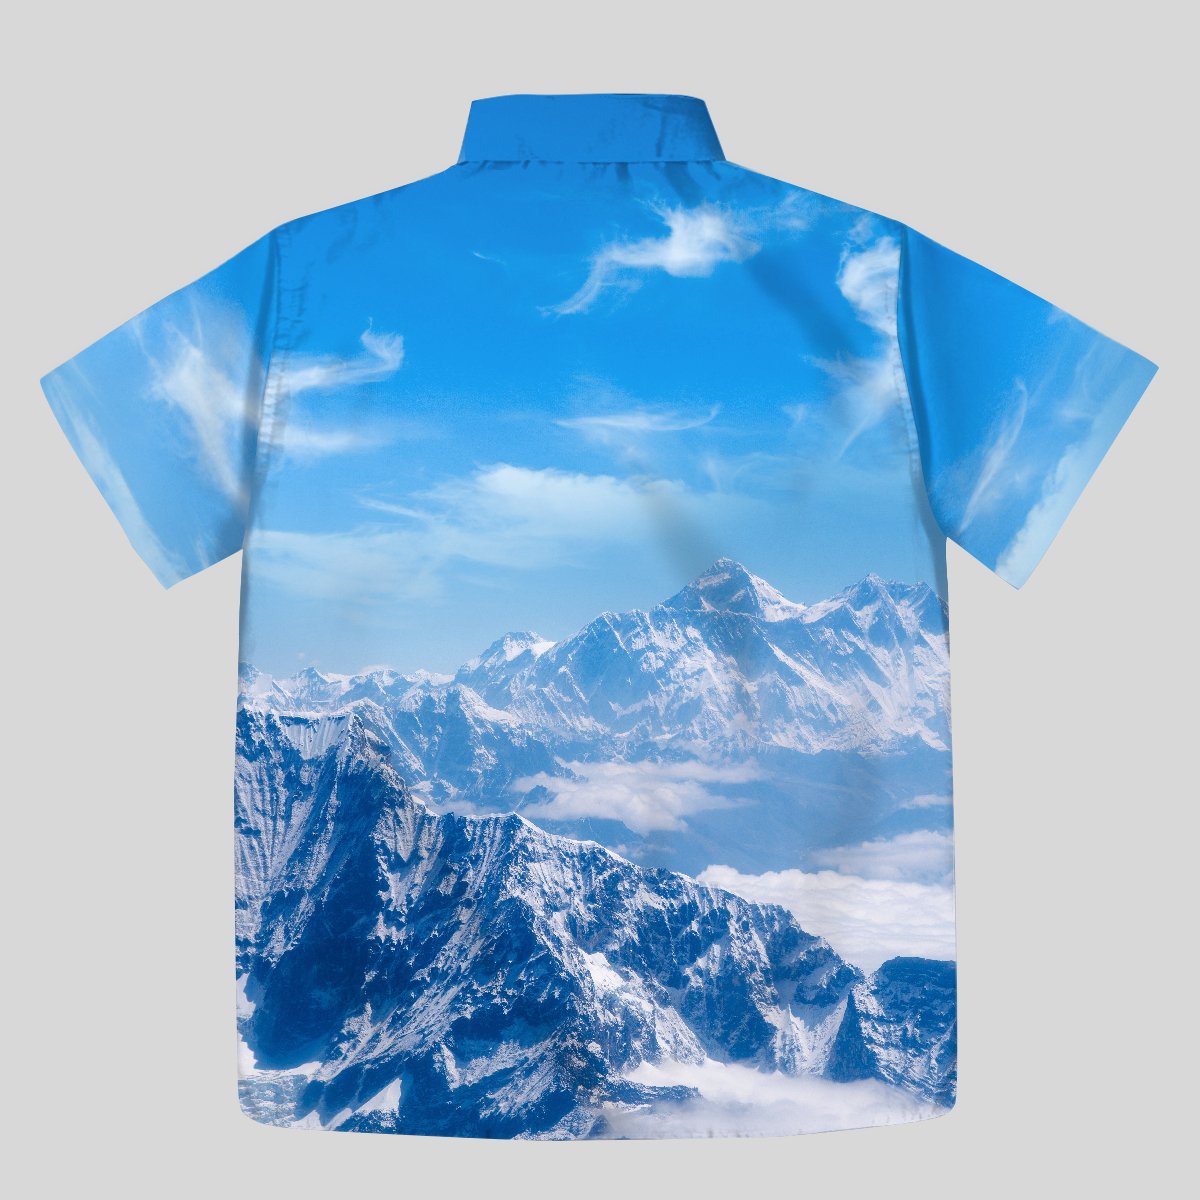 Mount Everest Button Up Pocket Shirt - Geeksoutfit